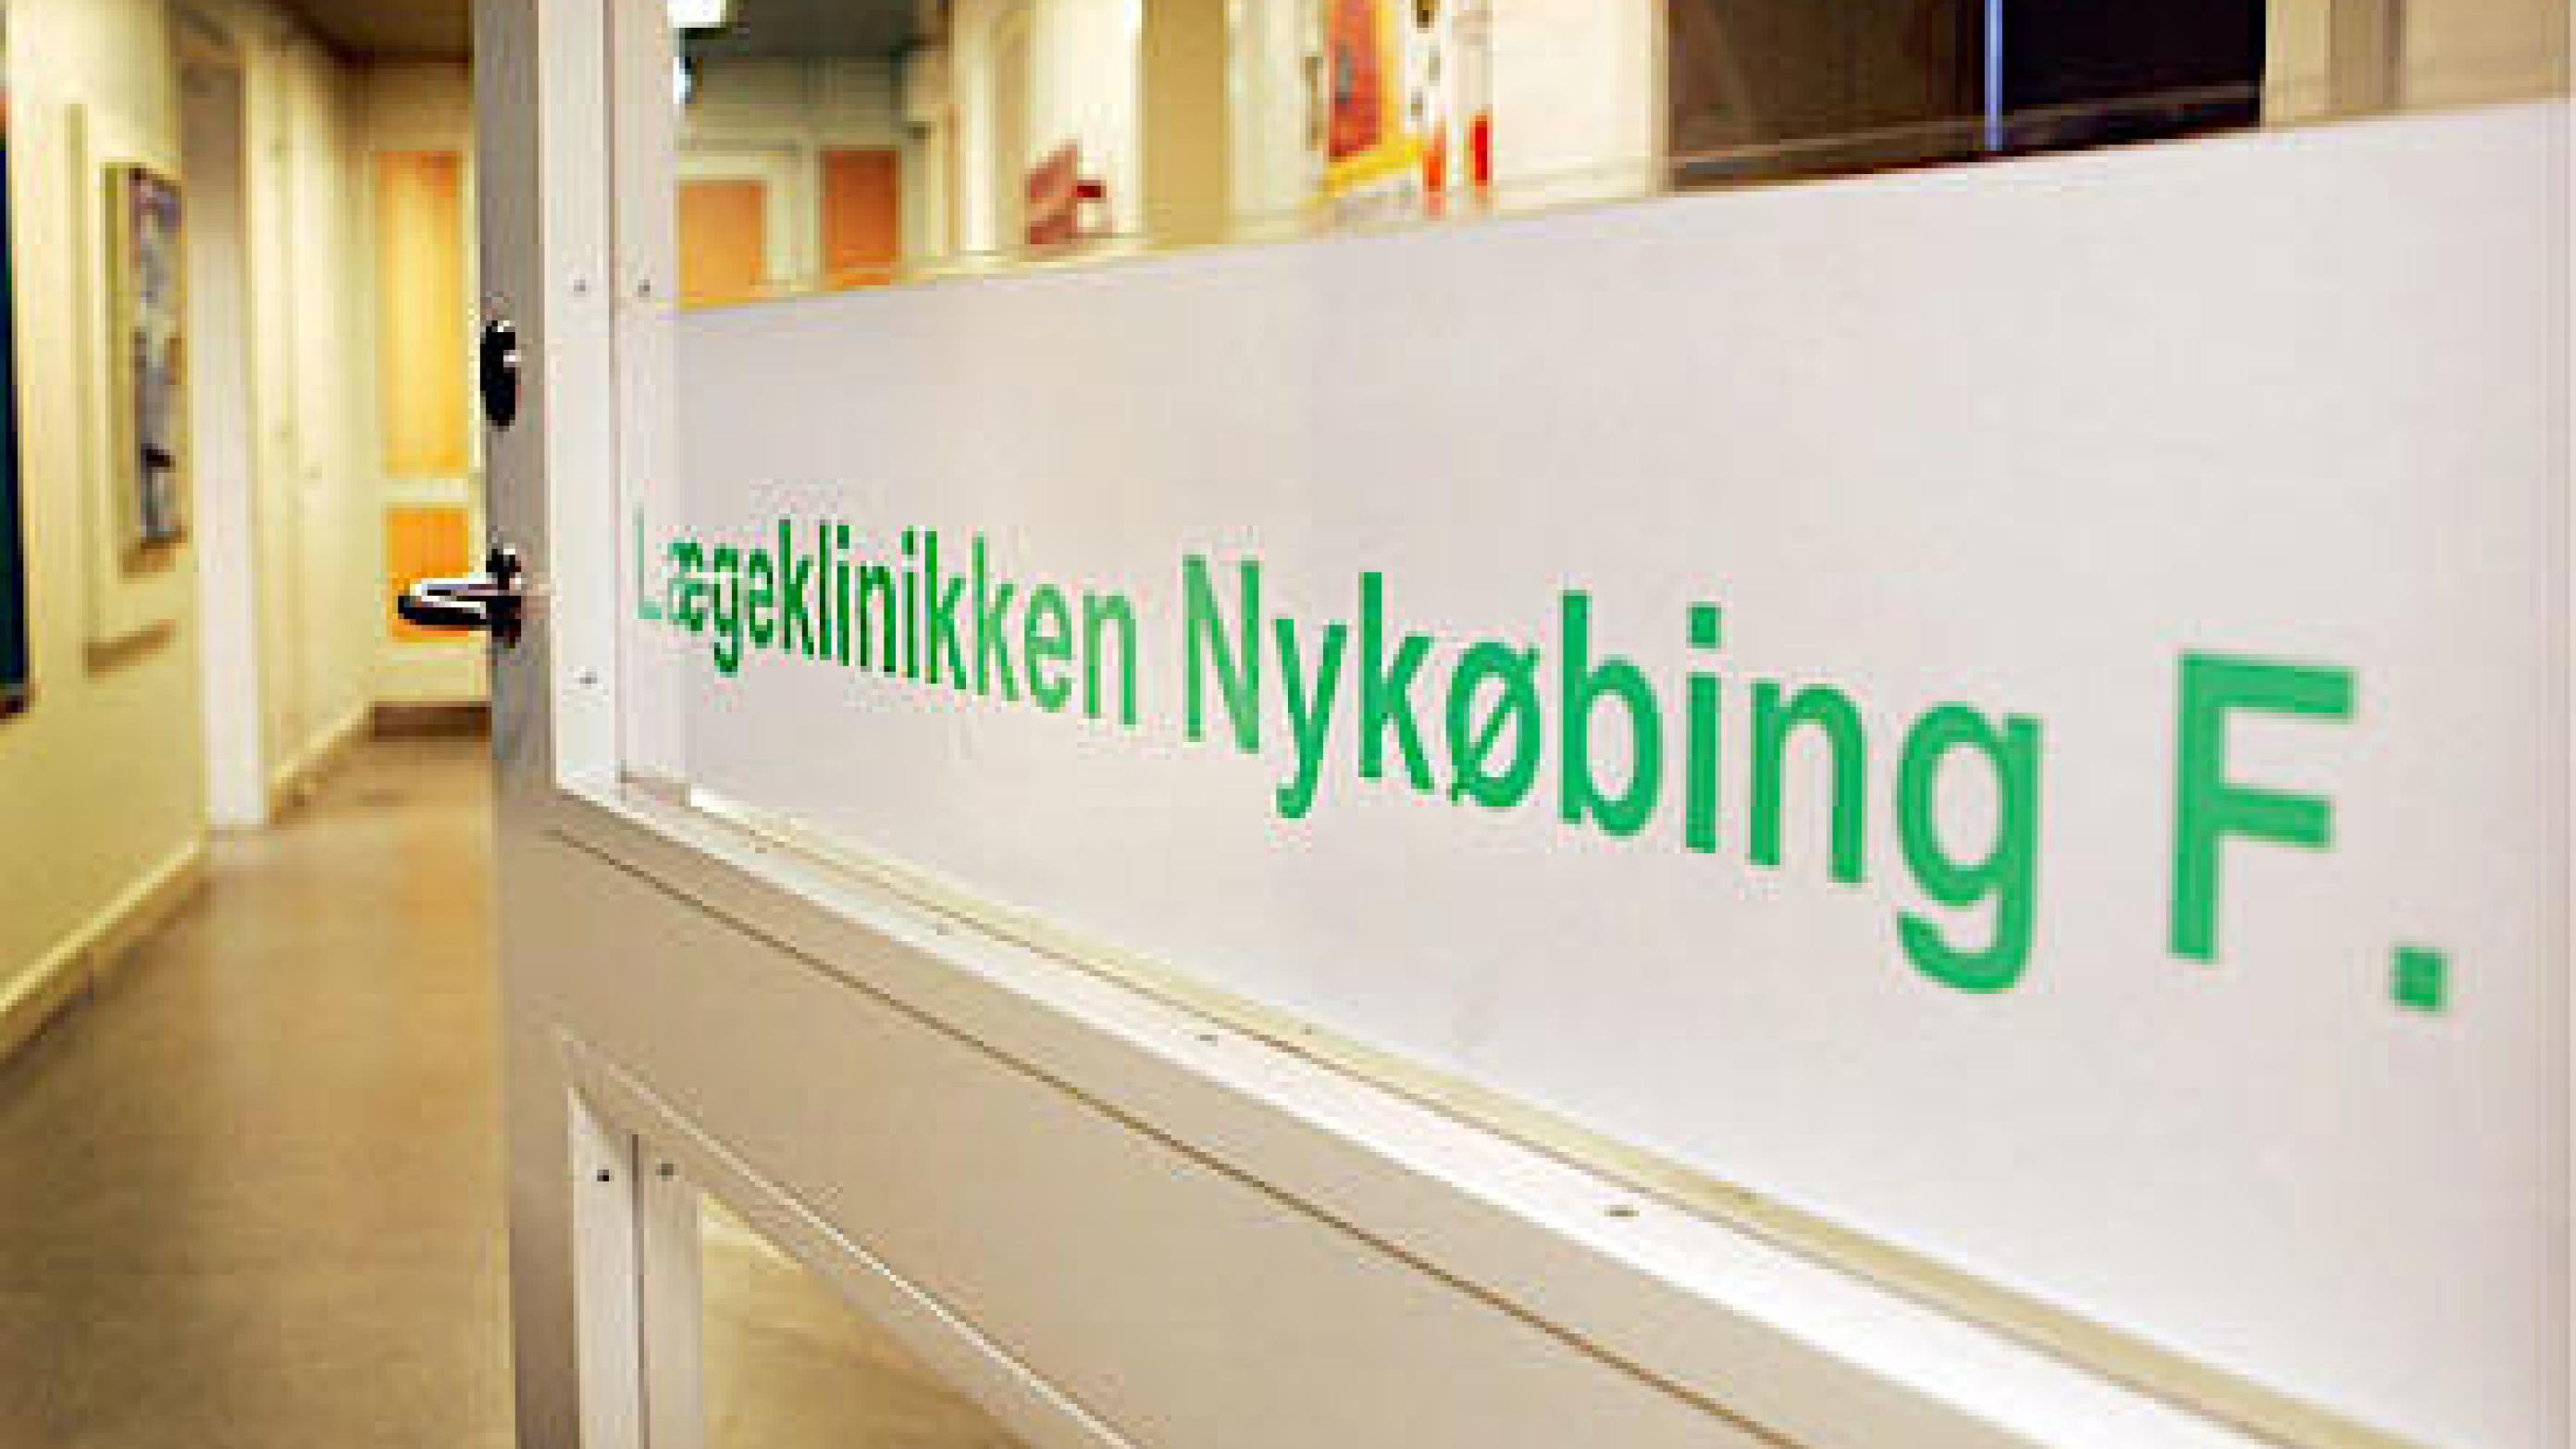 Manglen på praktiserende læger har resulteret i vikarbetjente regionsklinikker som f.eks. i Nykøbing Falster. Foto: Ingrid Riis.